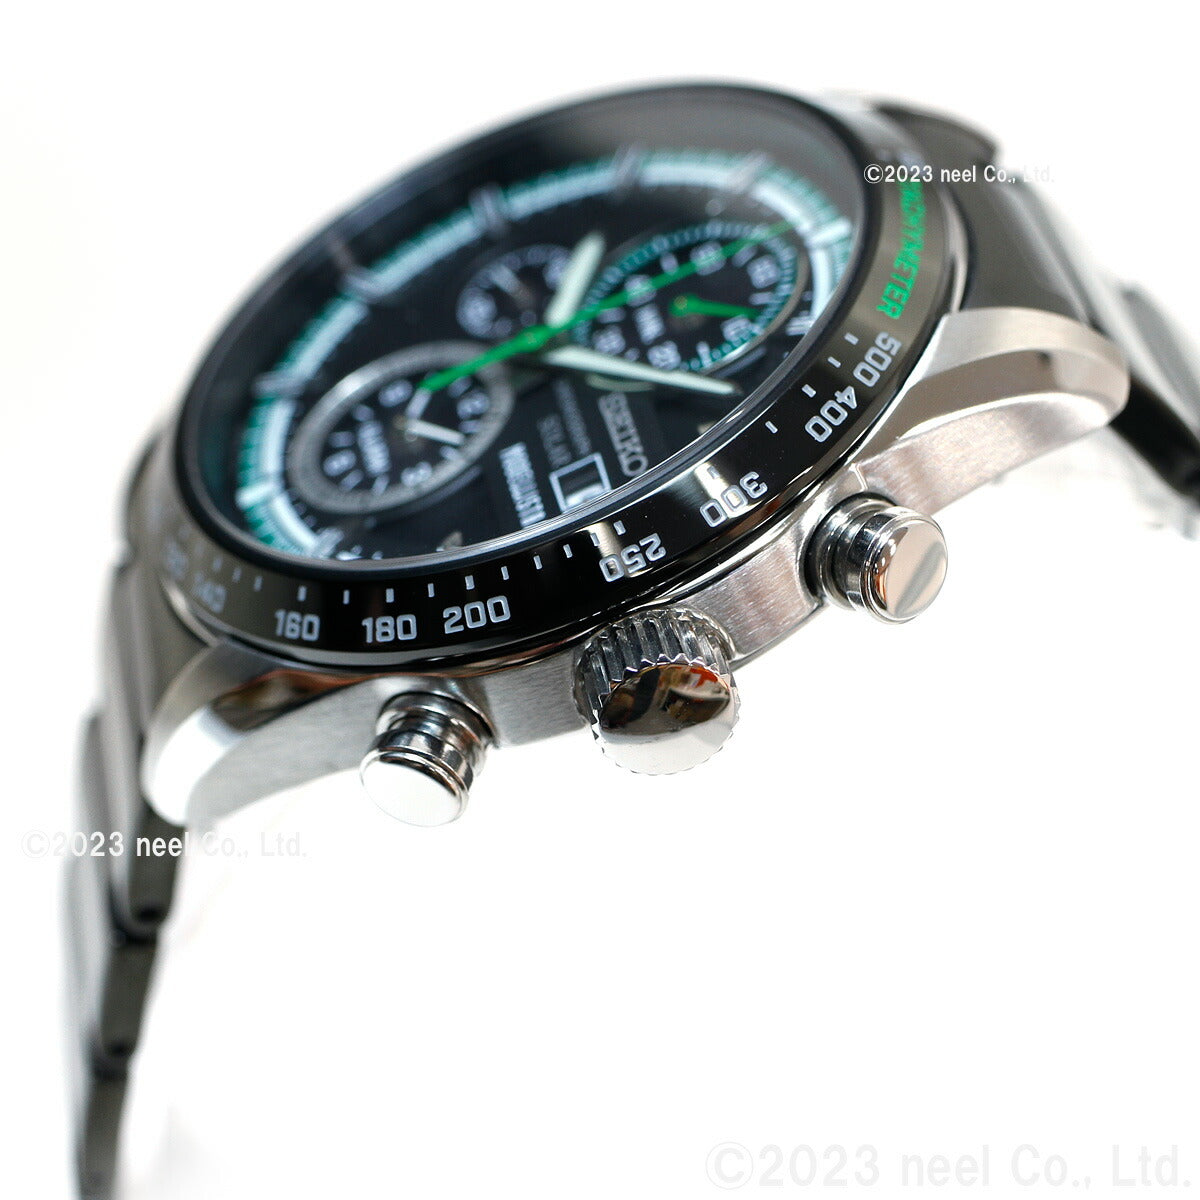 セイコー セレクション SEIKO SELECTION ソーラー モデリスタ コラボ 限定モデル 腕時計 メンズ クロノグラフ MODELLISTA Special Edition SBPY173